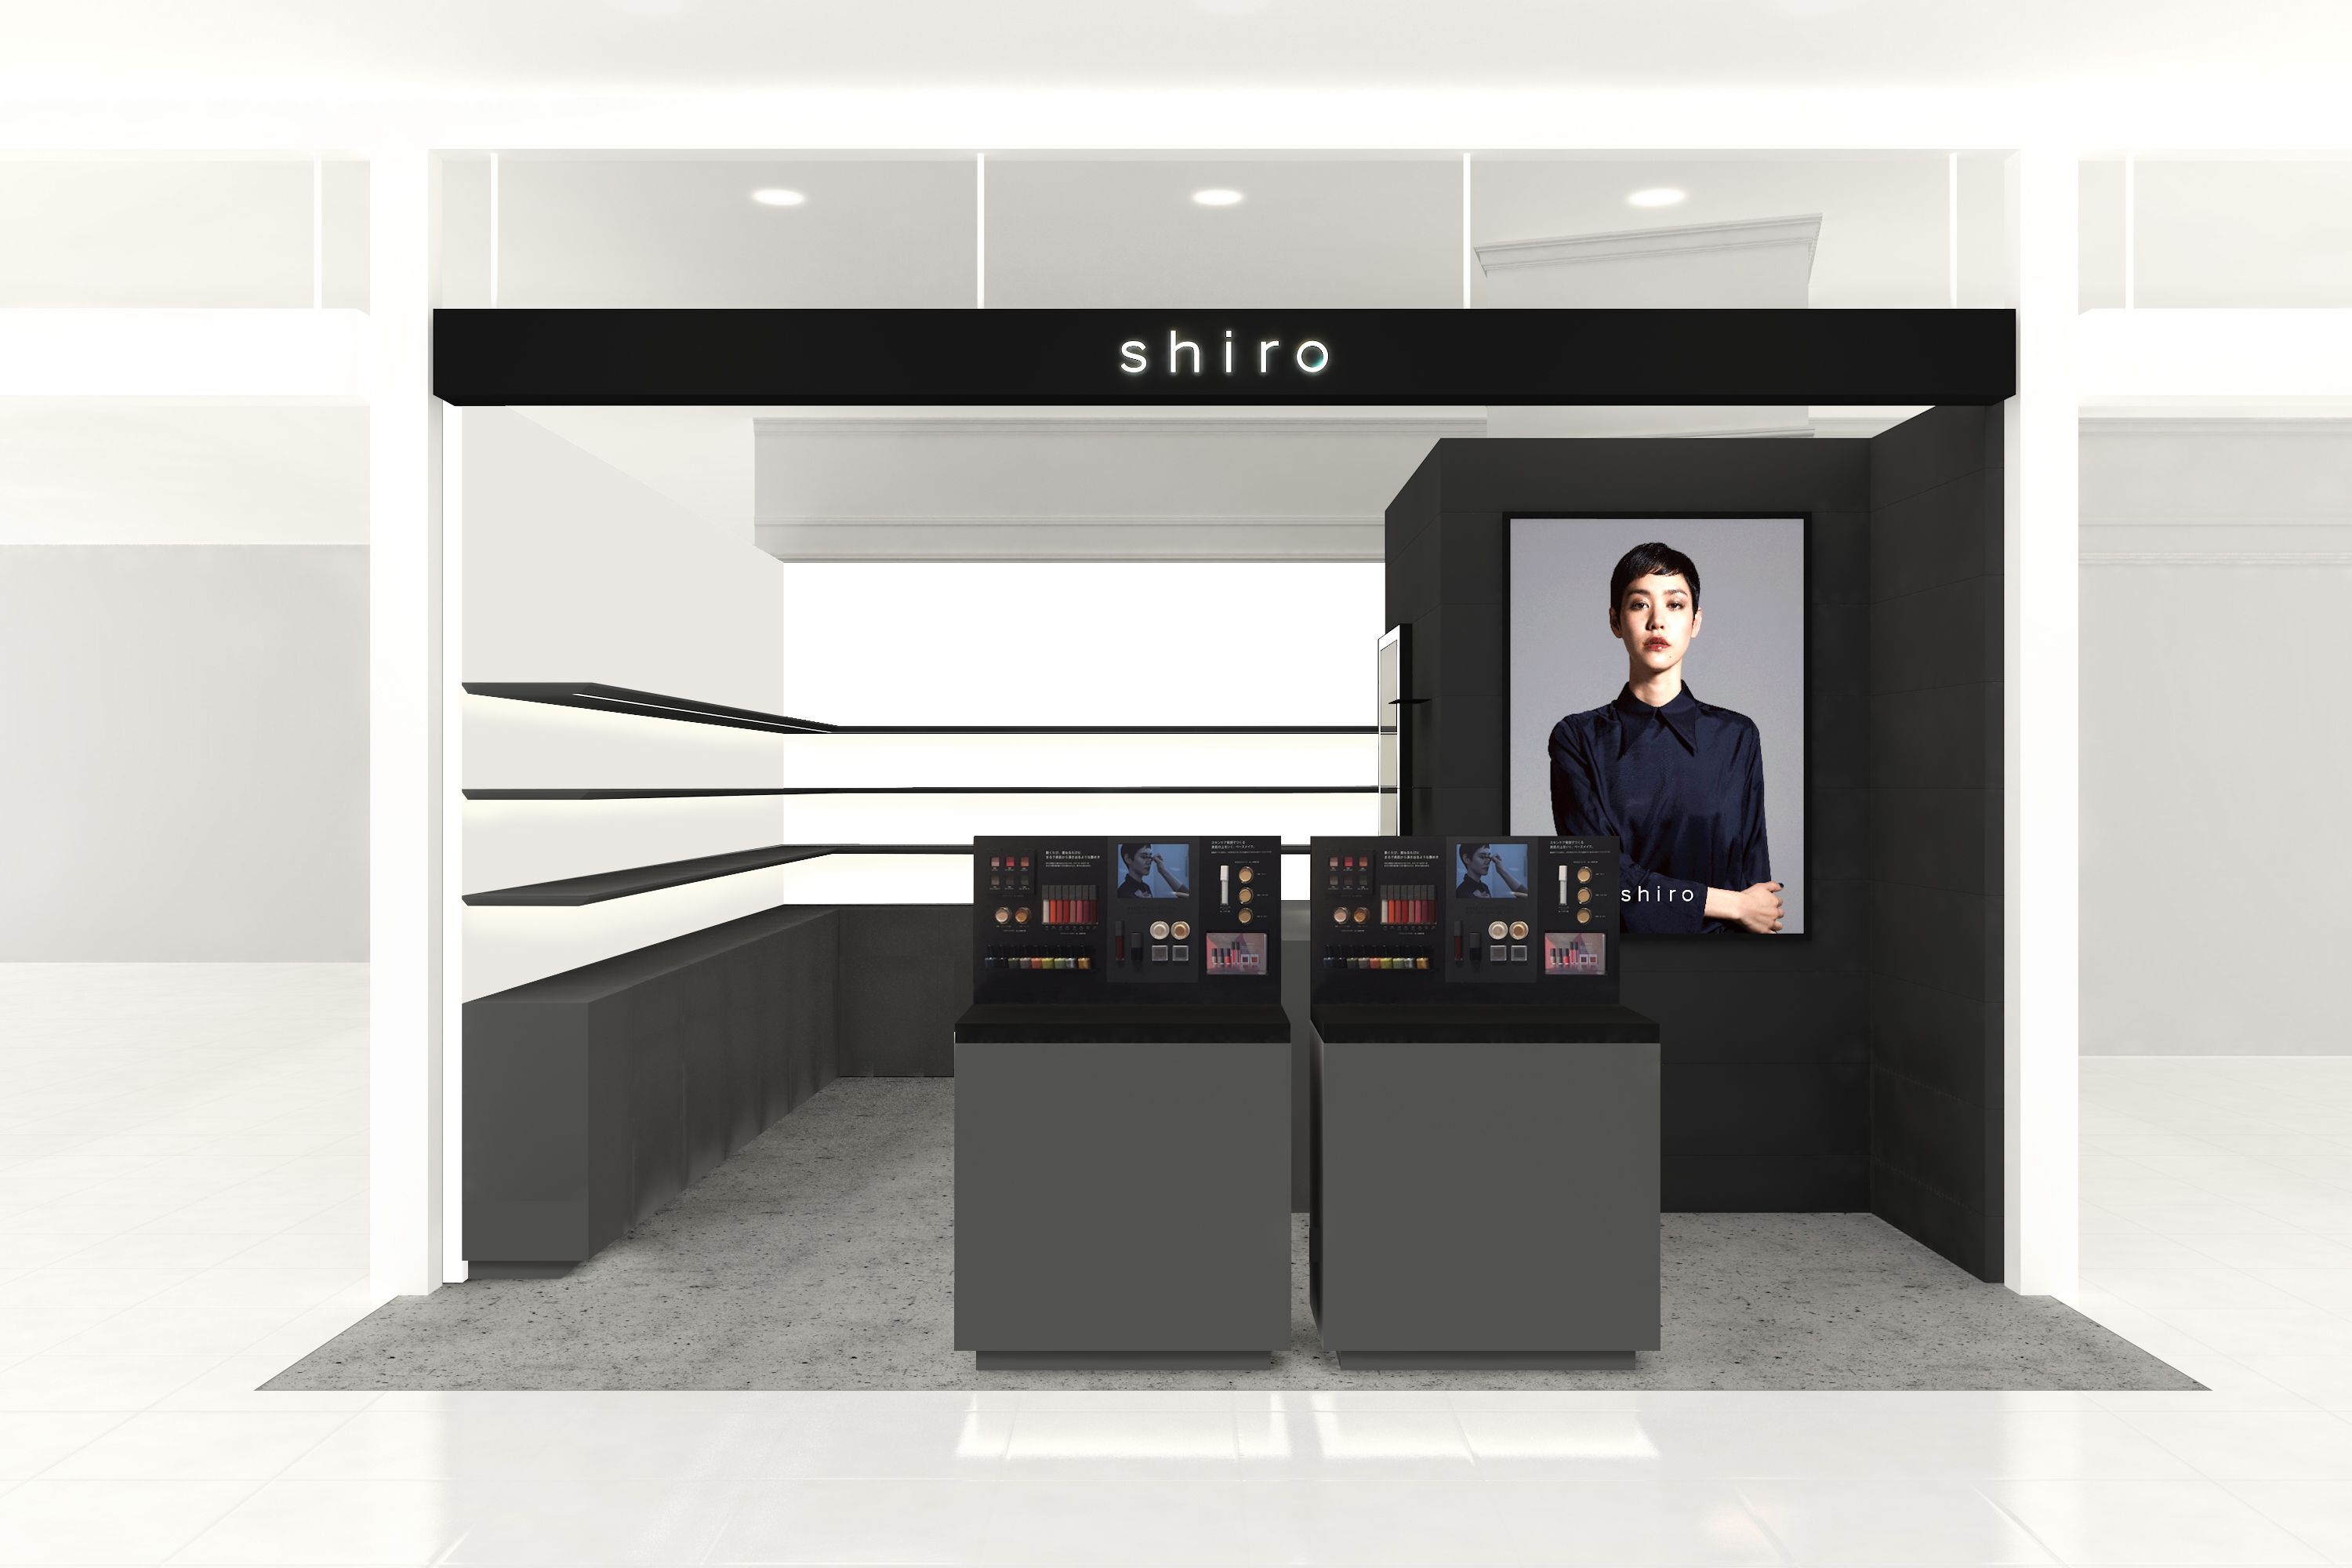 コスメティックブランド Shiro が東京ミッドタウン日比谷の 18年3月29日開業 のisetan Mirrorに新店舗 をオープン 株式会社ローレルのプレスリリース